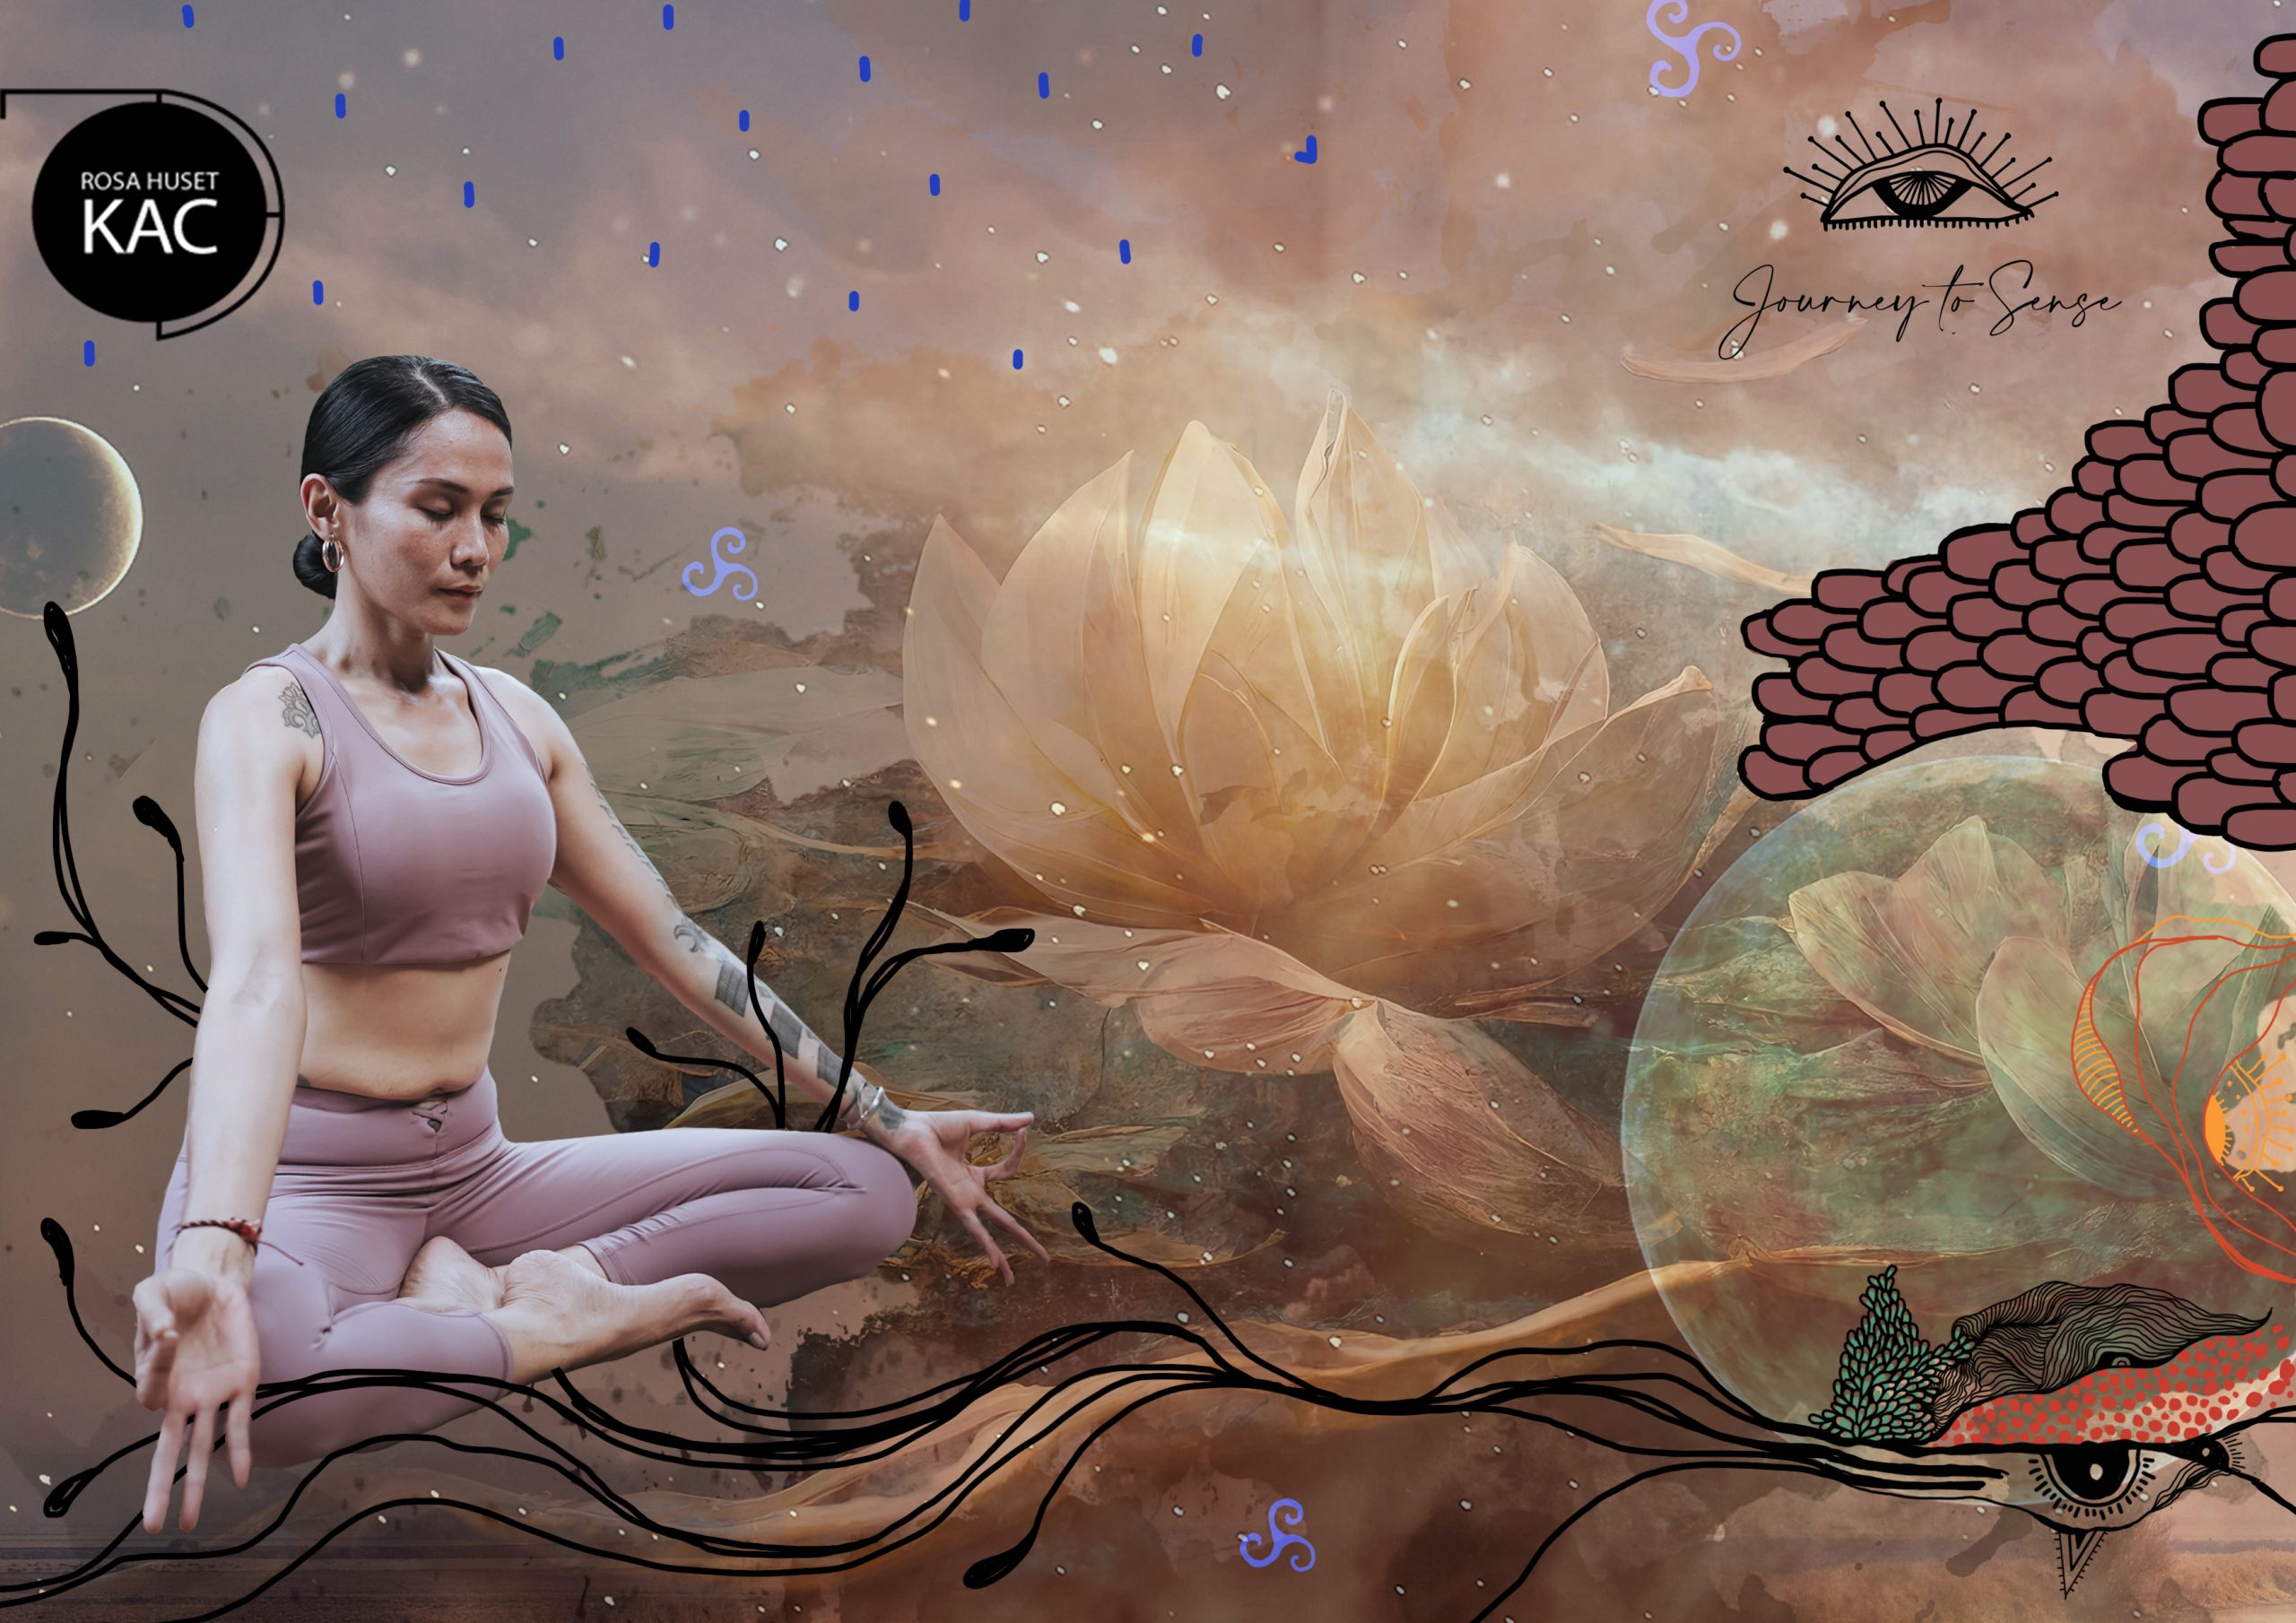 25-26 maj: Journey to Sense – Ashtanga yoga på Rosa Huset